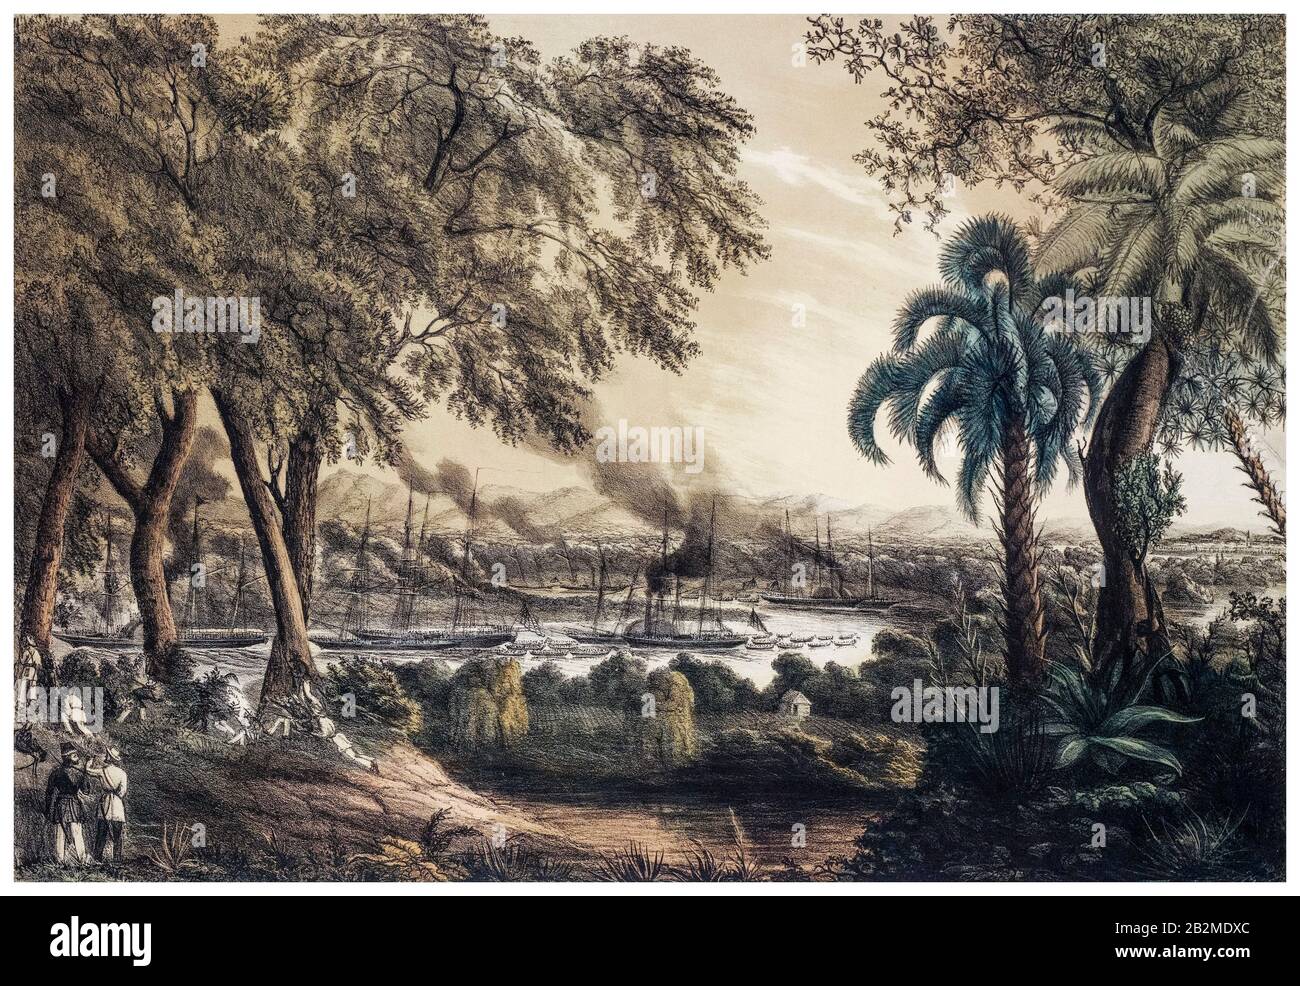 La marine américaine sous le Commodore Perry monte la rivière Tabasco au Devil's Bend, le 15 juin 1847, pendant la guerre Mexico-américaine (1846-1848), imprimée par H Walke, 1848 Banque D'Images